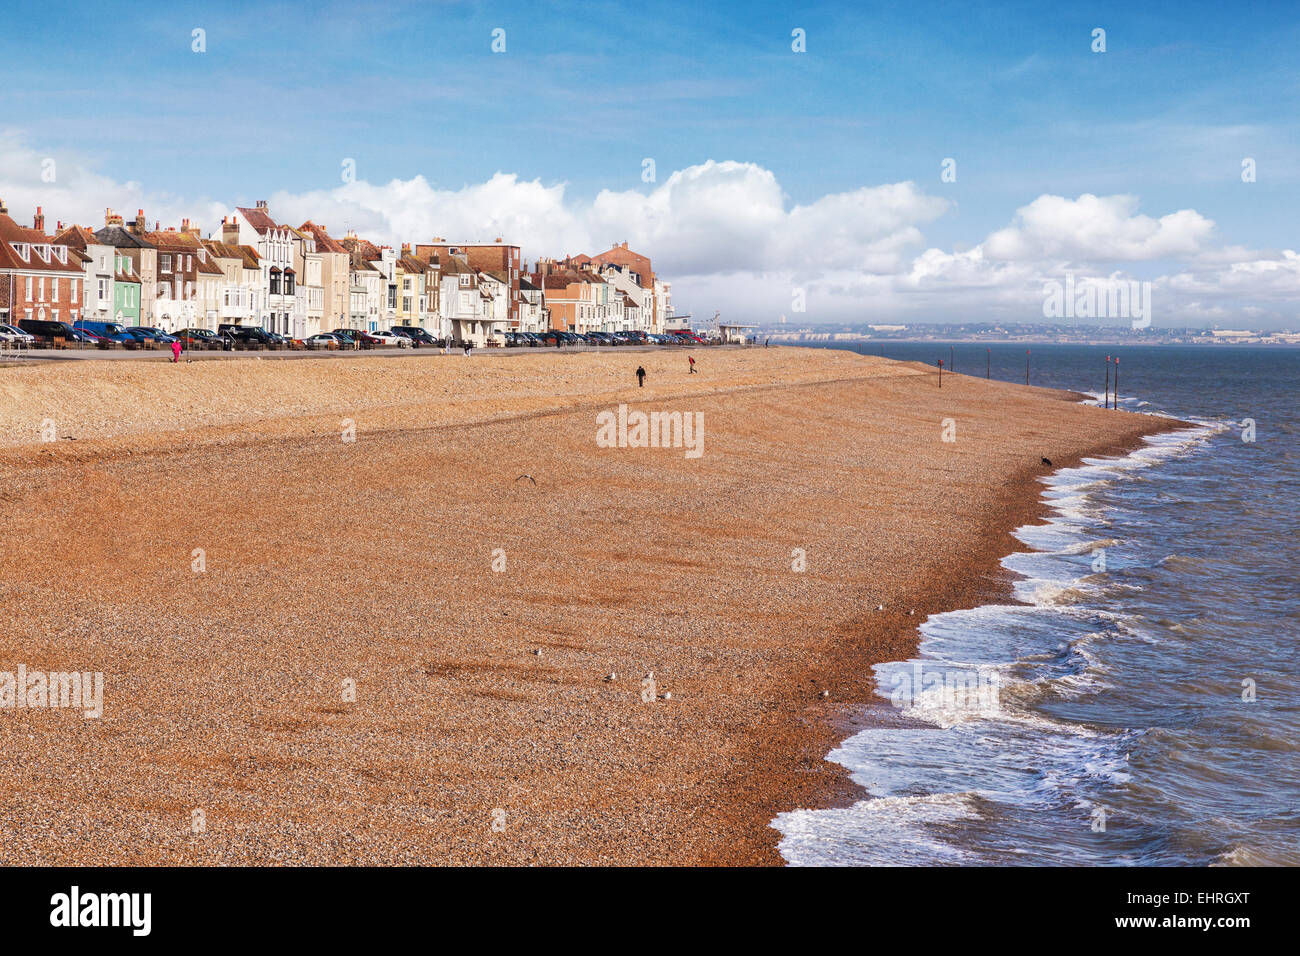 The beach at Deal, Kent, England, UK. Stock Photo